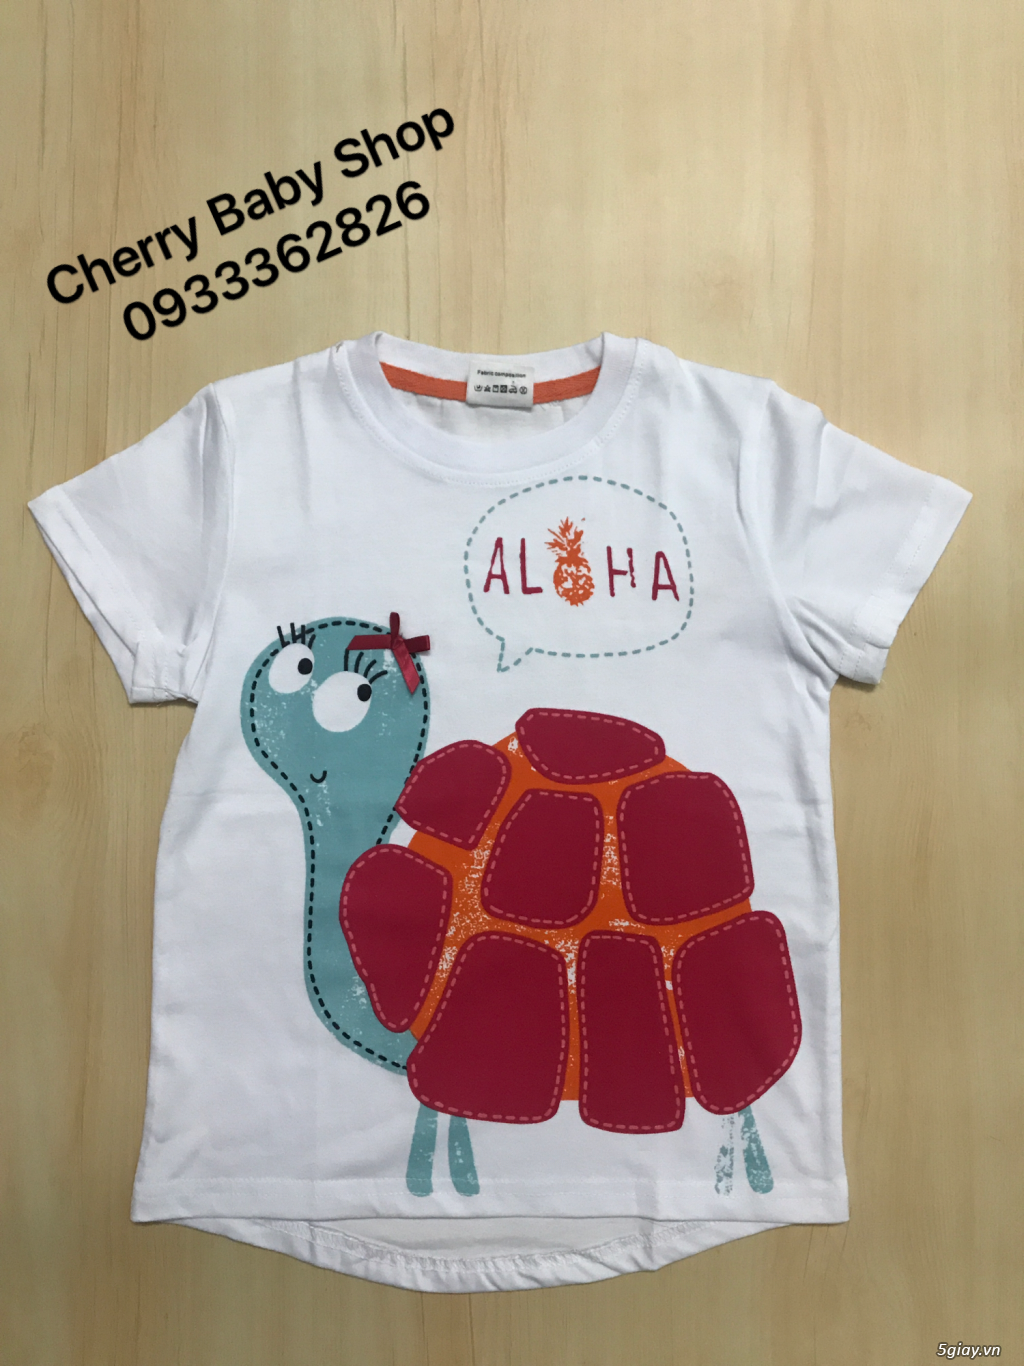 Cherry baby shop:: Chuyên thời trang trẻ em đẹp và chất lượng, sỉ-lẻ!! - 16